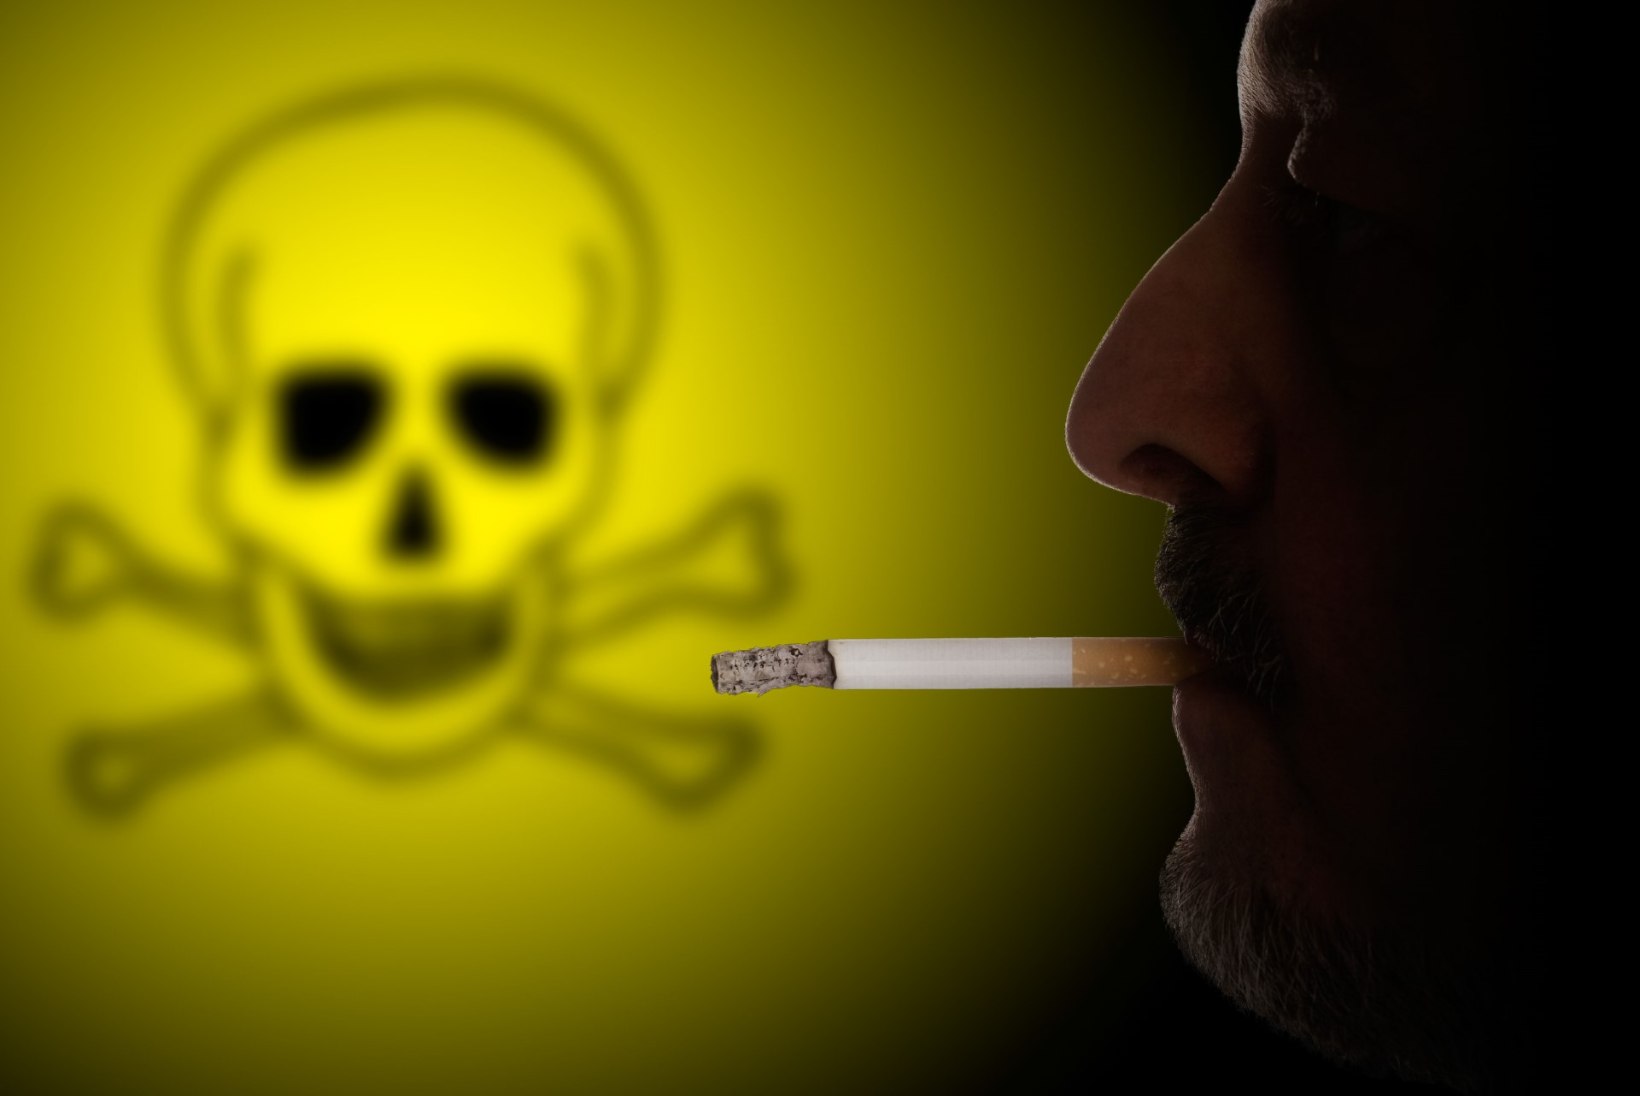 Iga tõmmatud sigaret lõhub DNAd